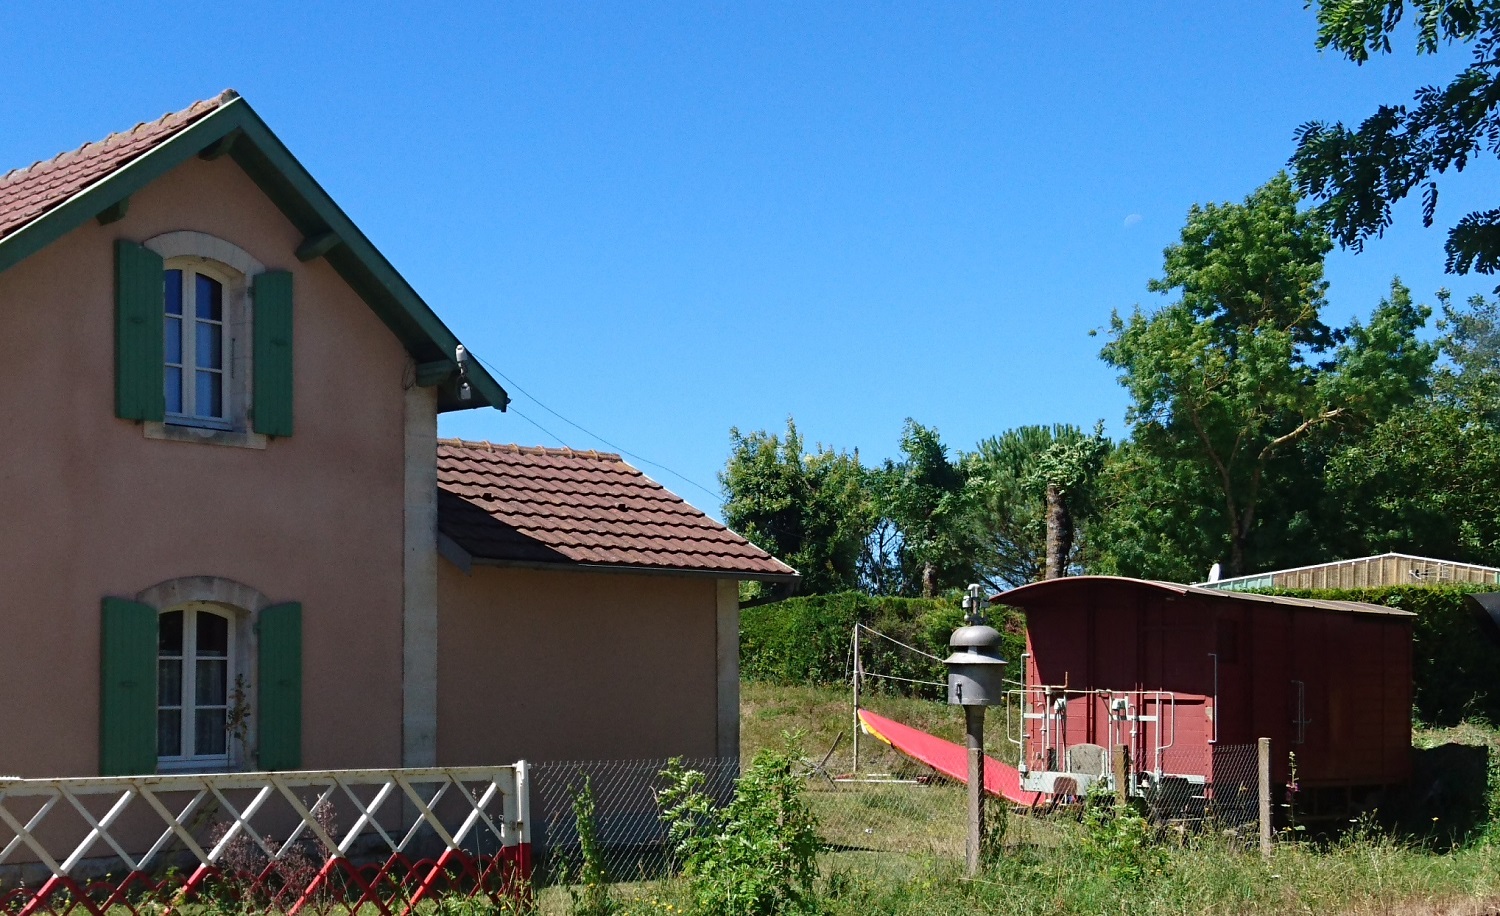 Il récupère un ancien wagon AOMC et en fait une cabane de jardin dans sa maison en Charente-Maritime